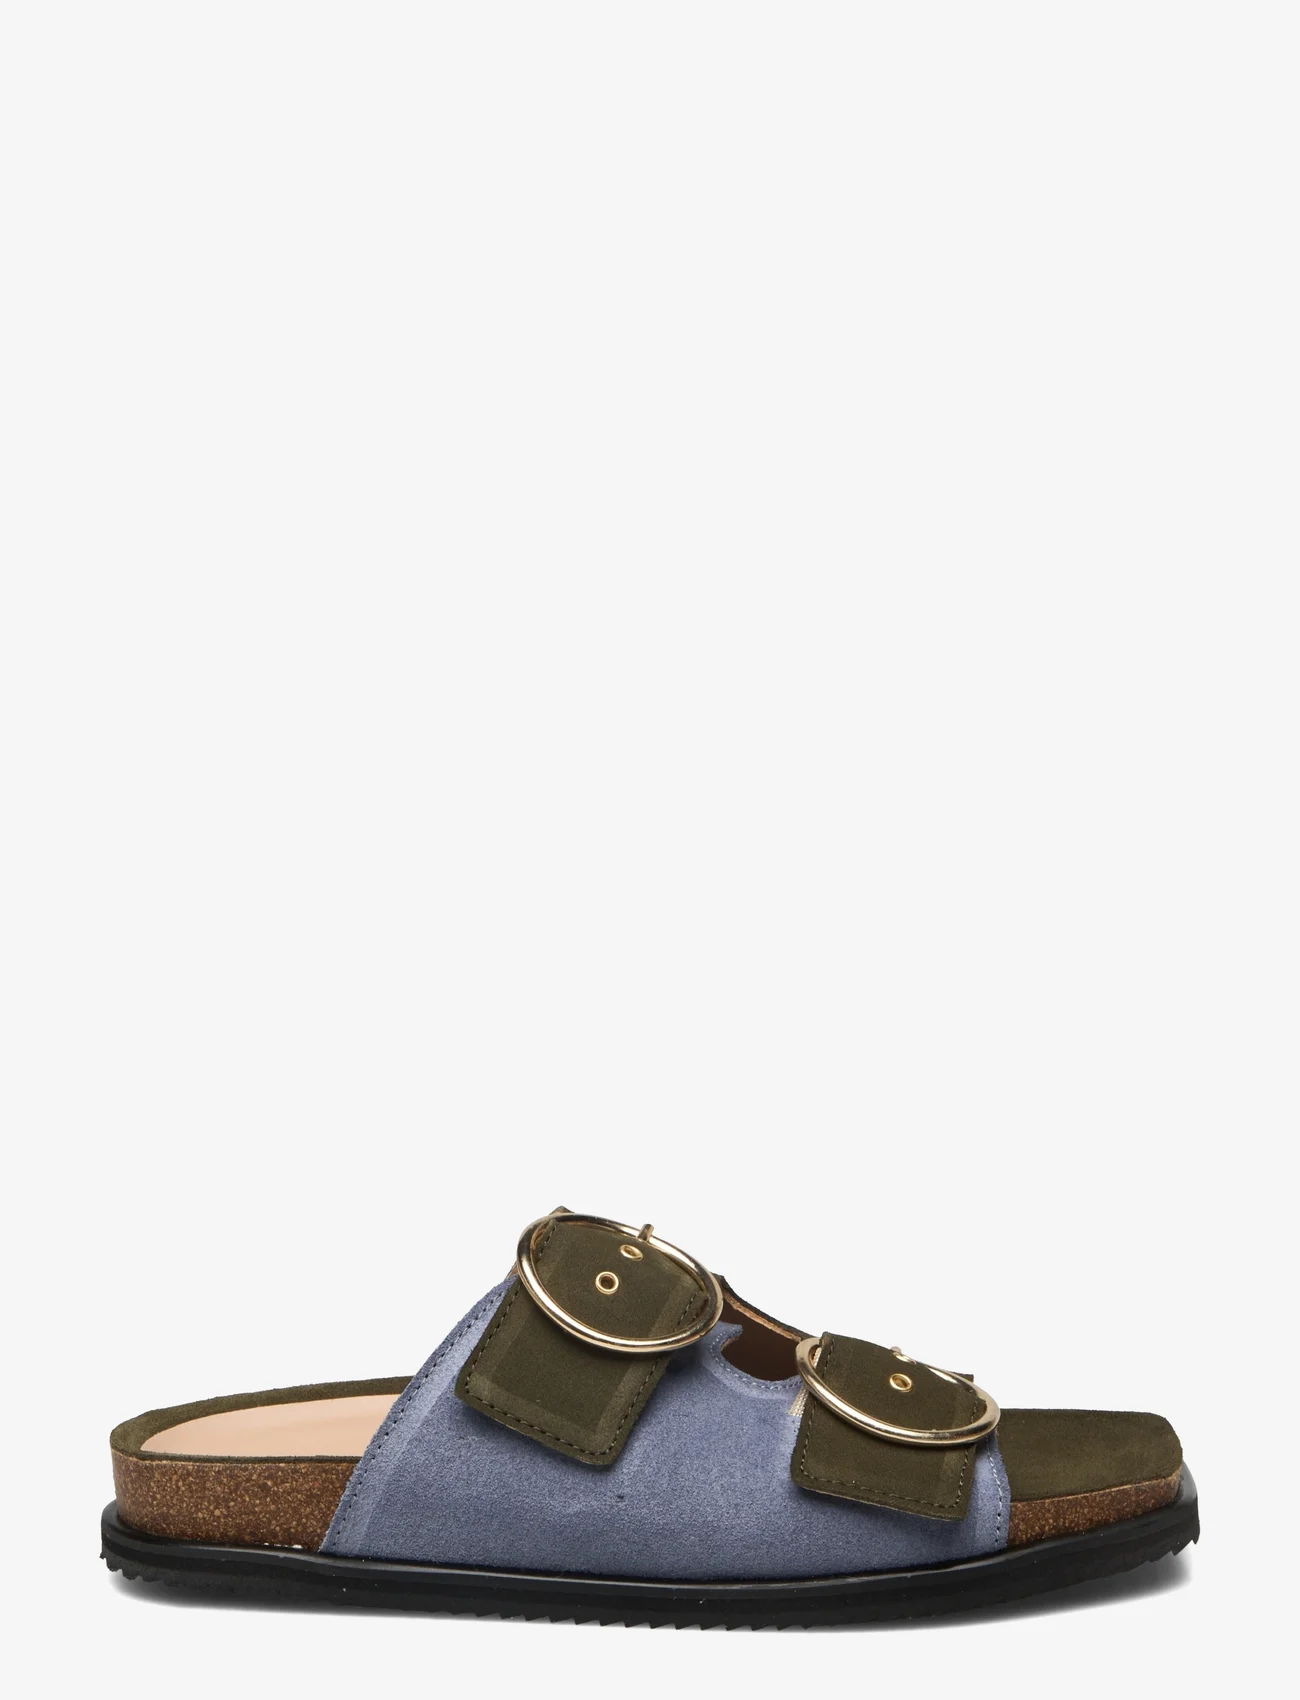 ANGULUS - Sandals - flat - open toe - op - flat sandals - 2244/2242 light blue/green - 1